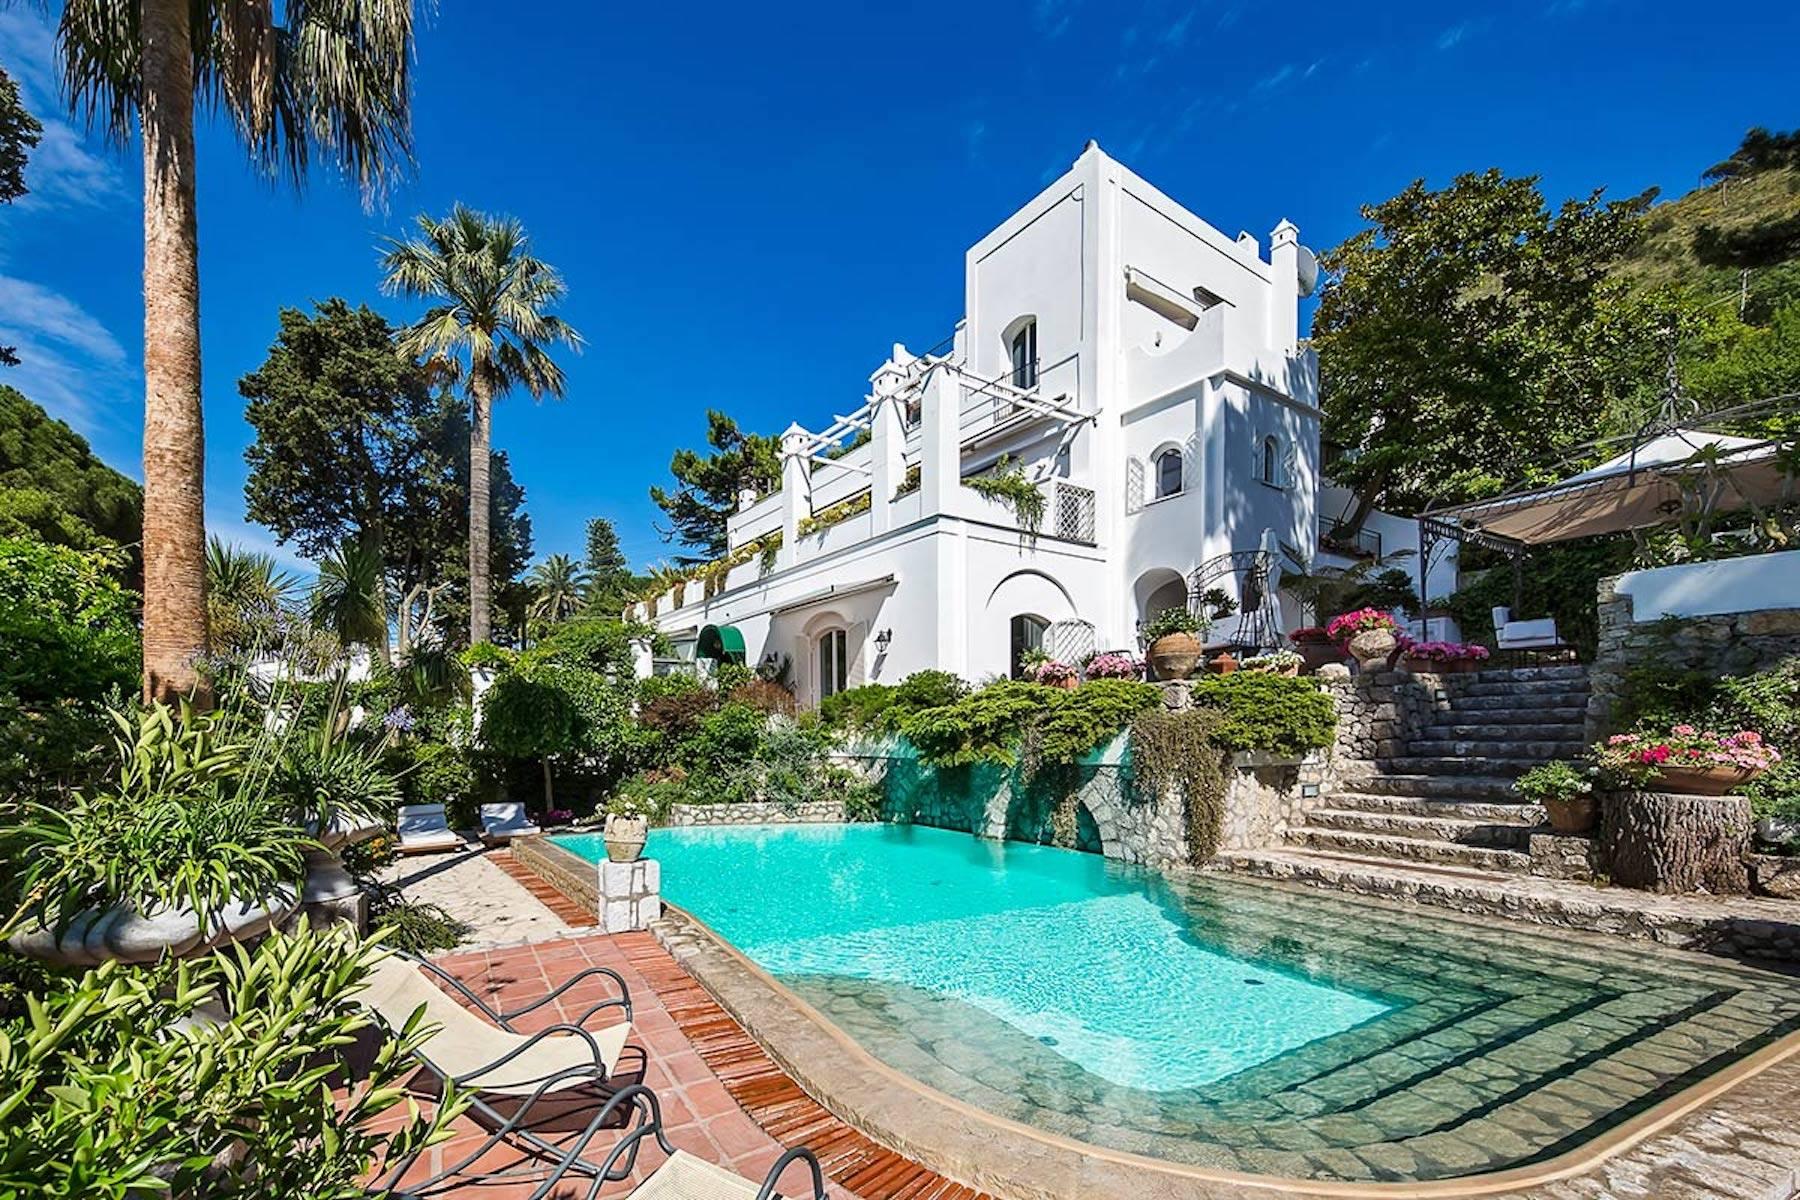 Splendida residenza di fine ottocento nell'incantevole Capri - 1